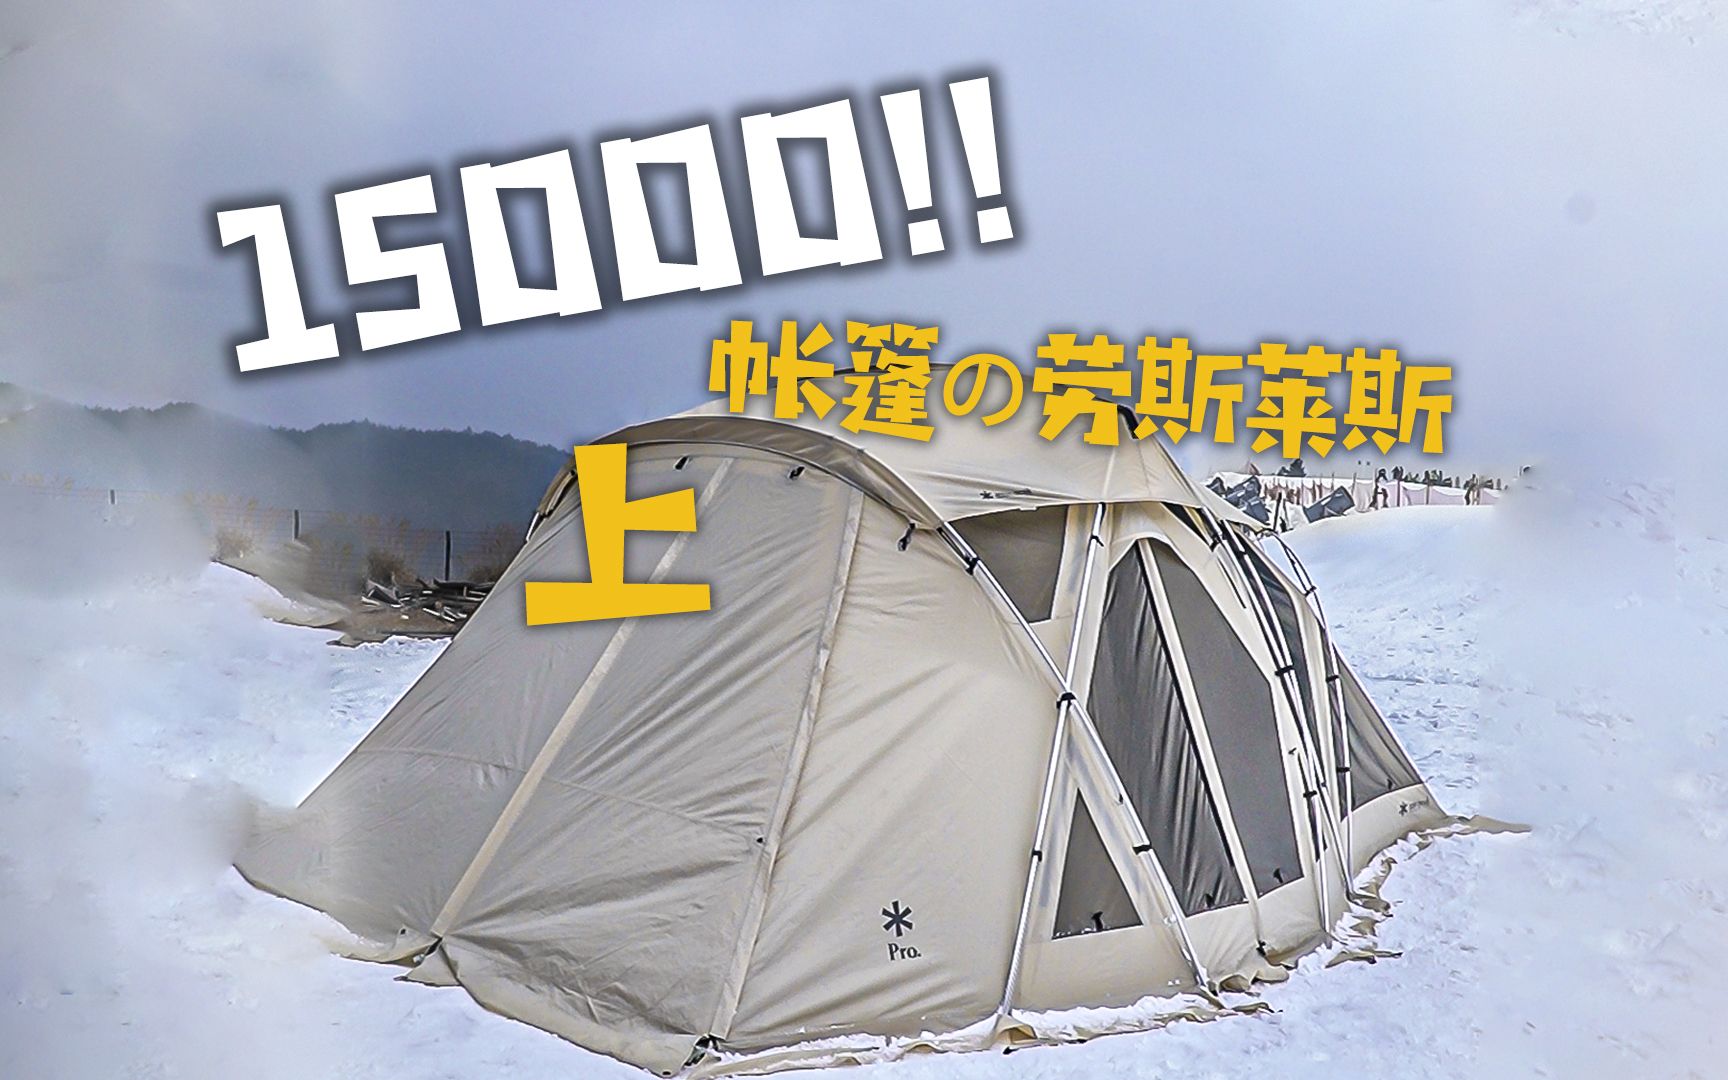 15000の超豪华帐篷，像一个倒扣着的贝壳，搭起来是怎样的体验？雪峰Long Living Shell测评（上）